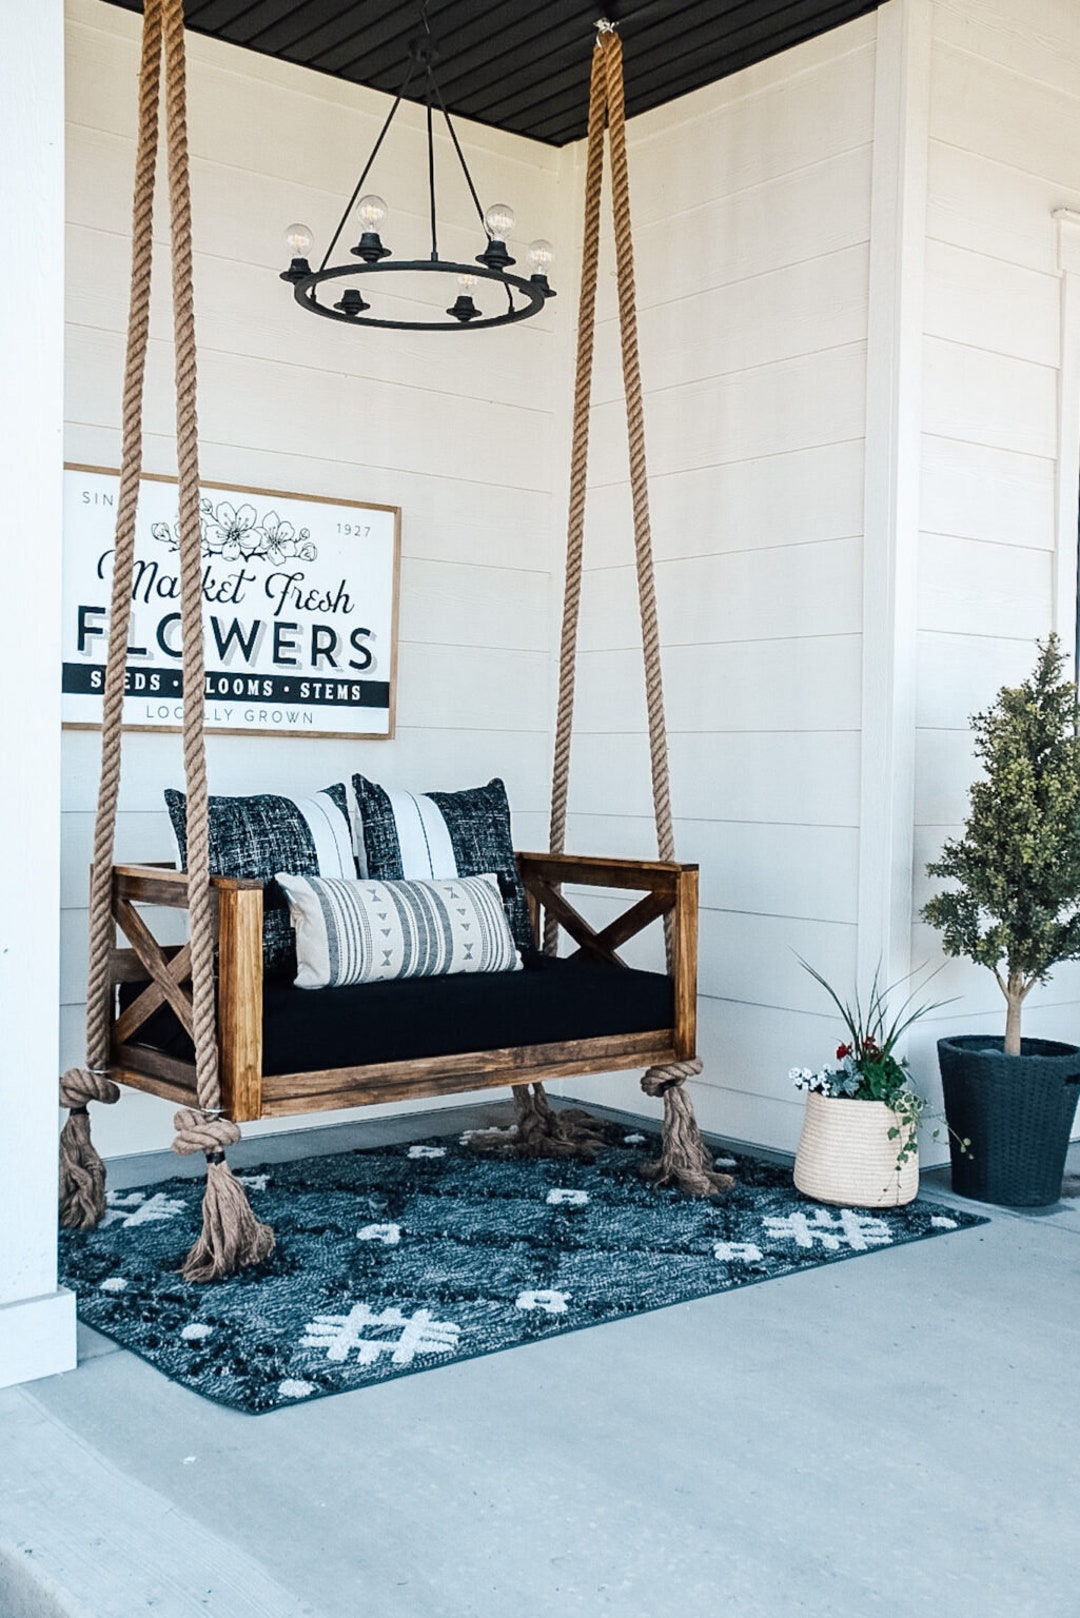 Raap Zeggen raket Oak Swing Bed With Seat Cushion Wooden Porch Swing Outdoor - Etsy